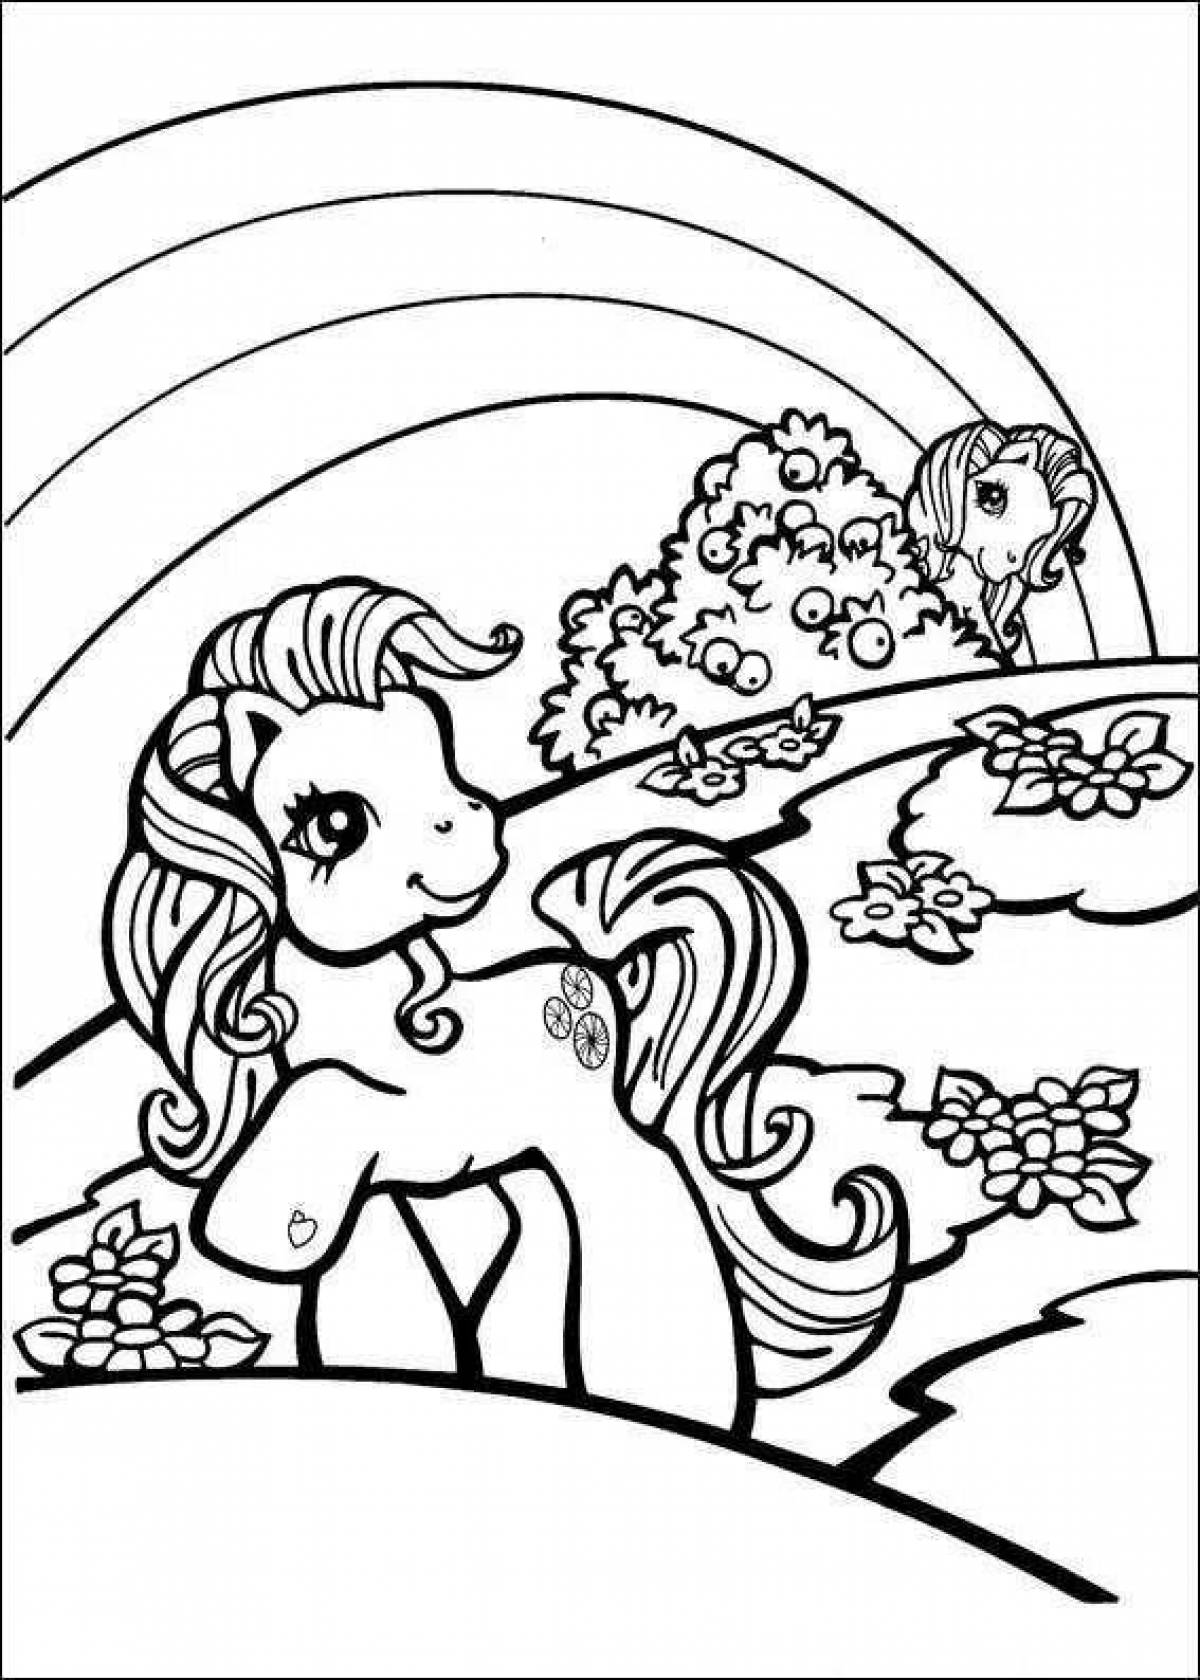 Dazzle coloring book include unicorns